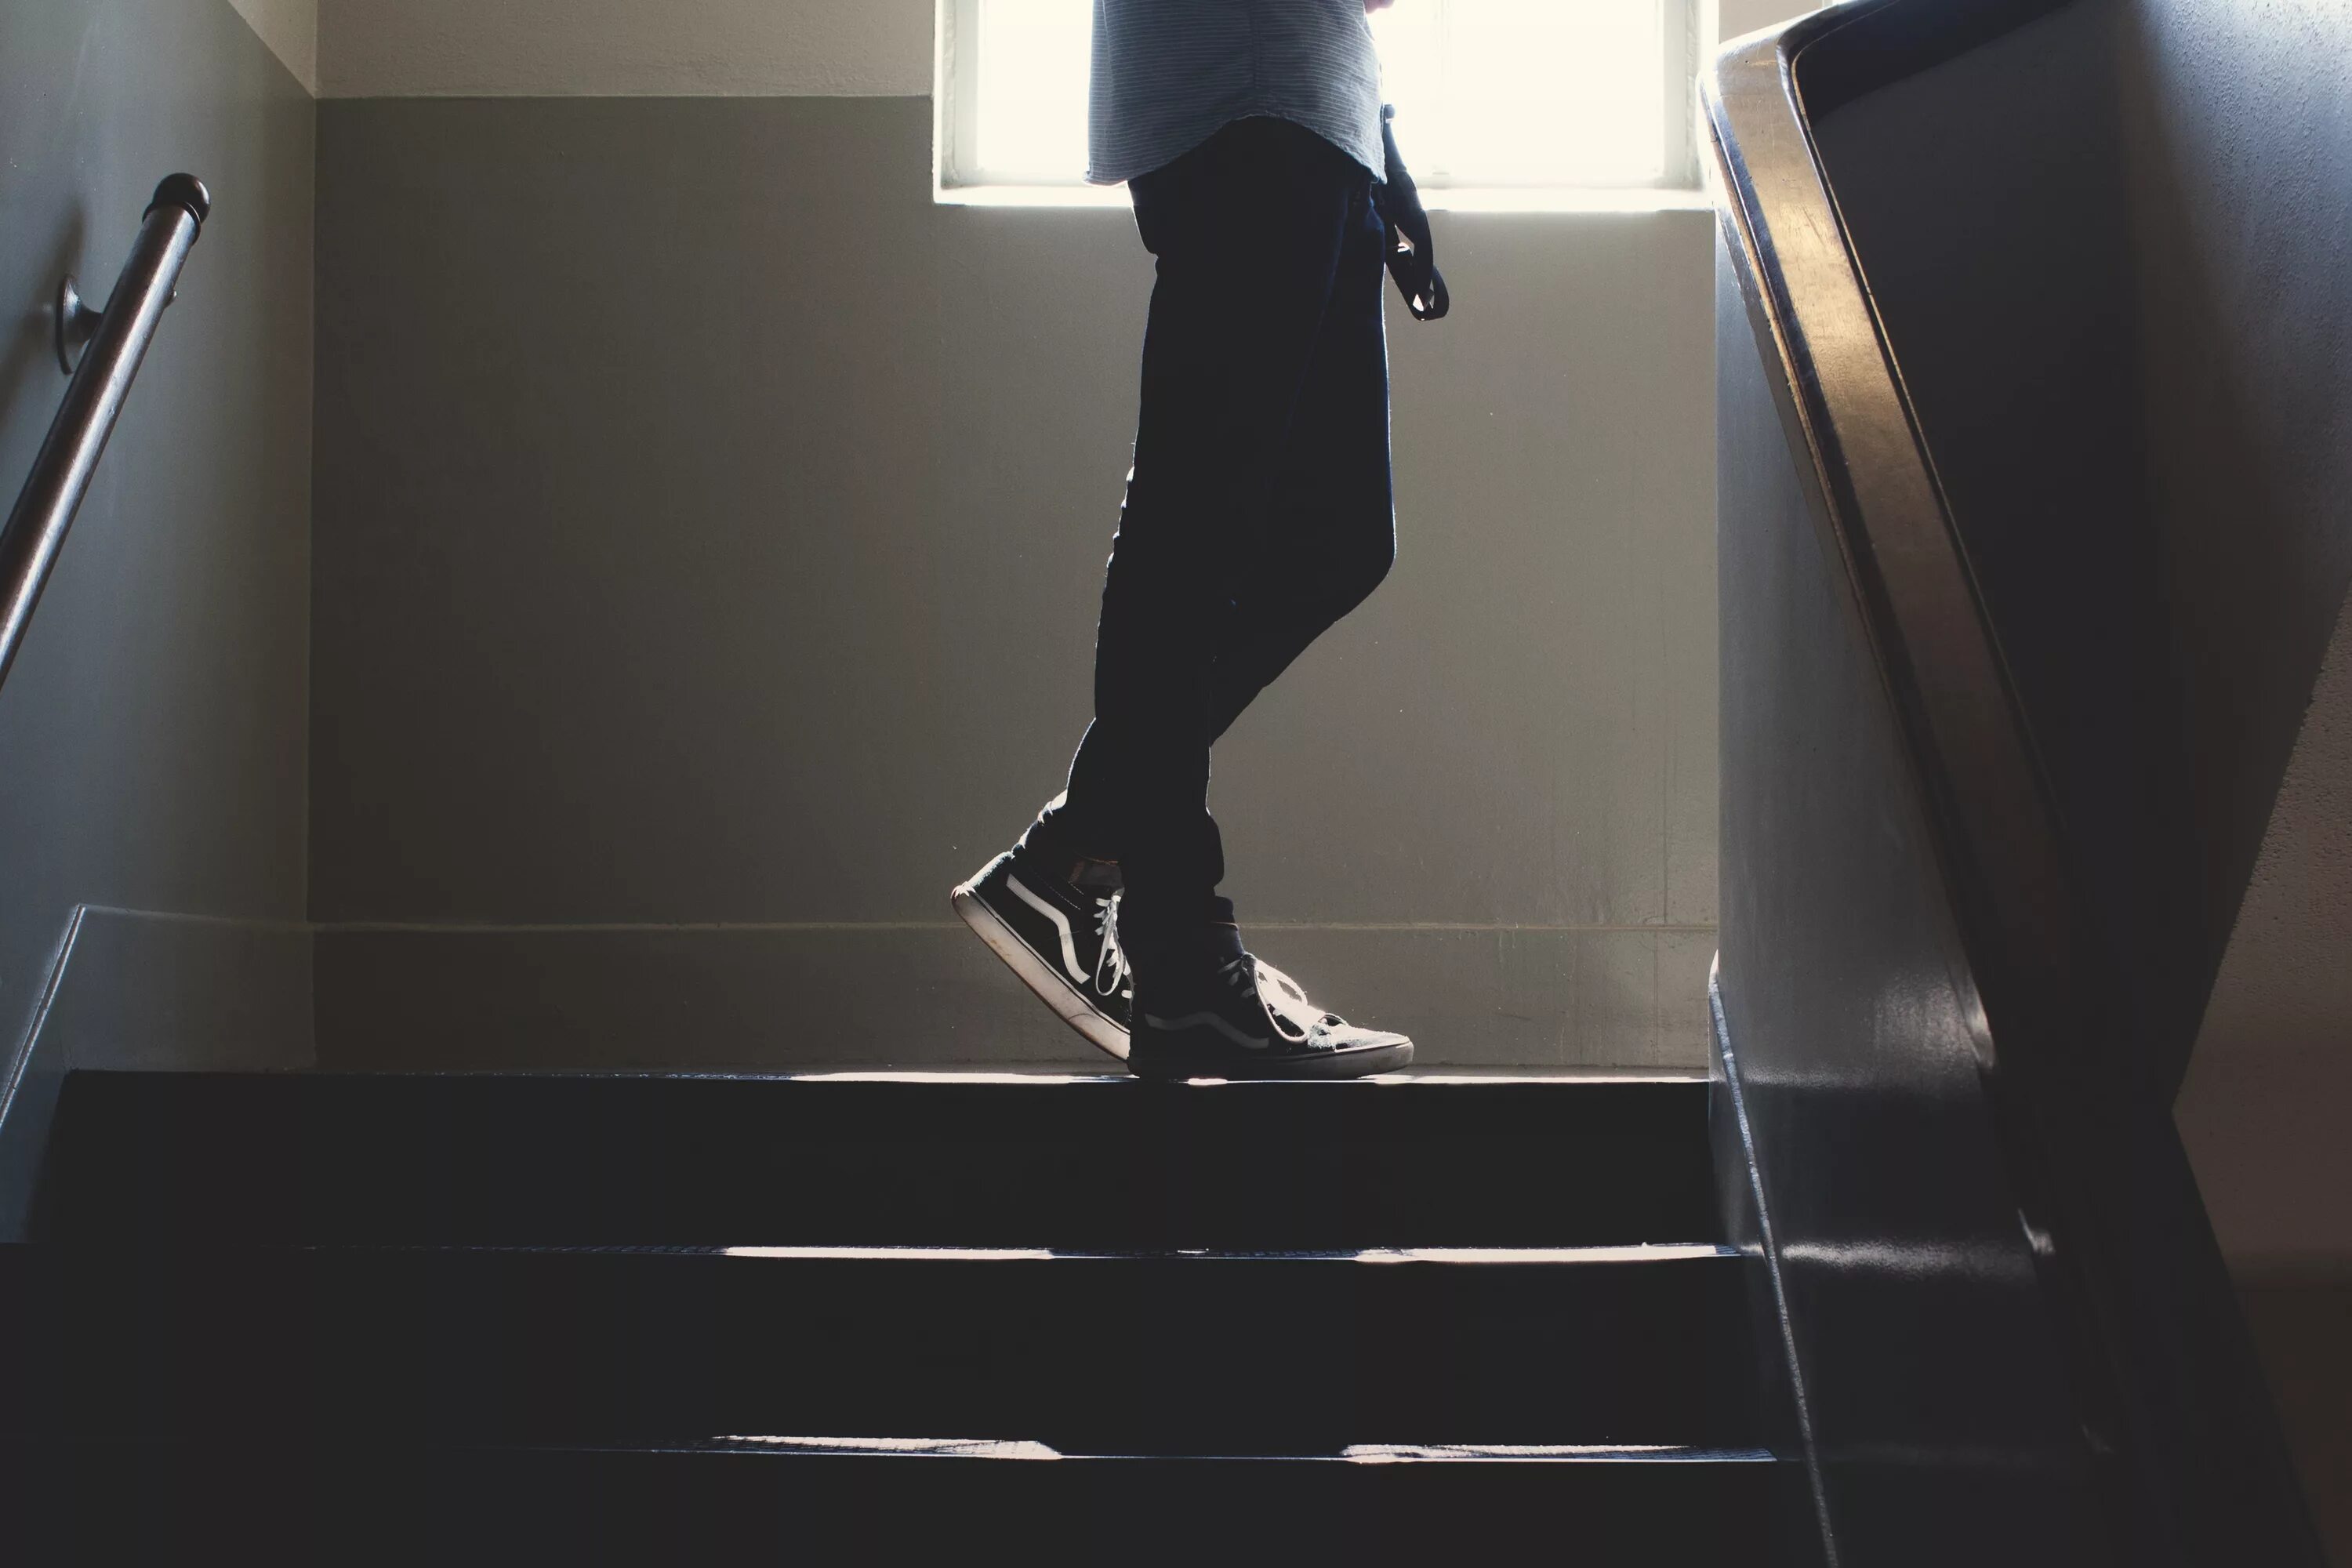 Давай поднимемся по лестнице. Поднимается по лестнице. Парень на лестнице. Человек поднимается по лестнице. Поднимается по ступенькам.